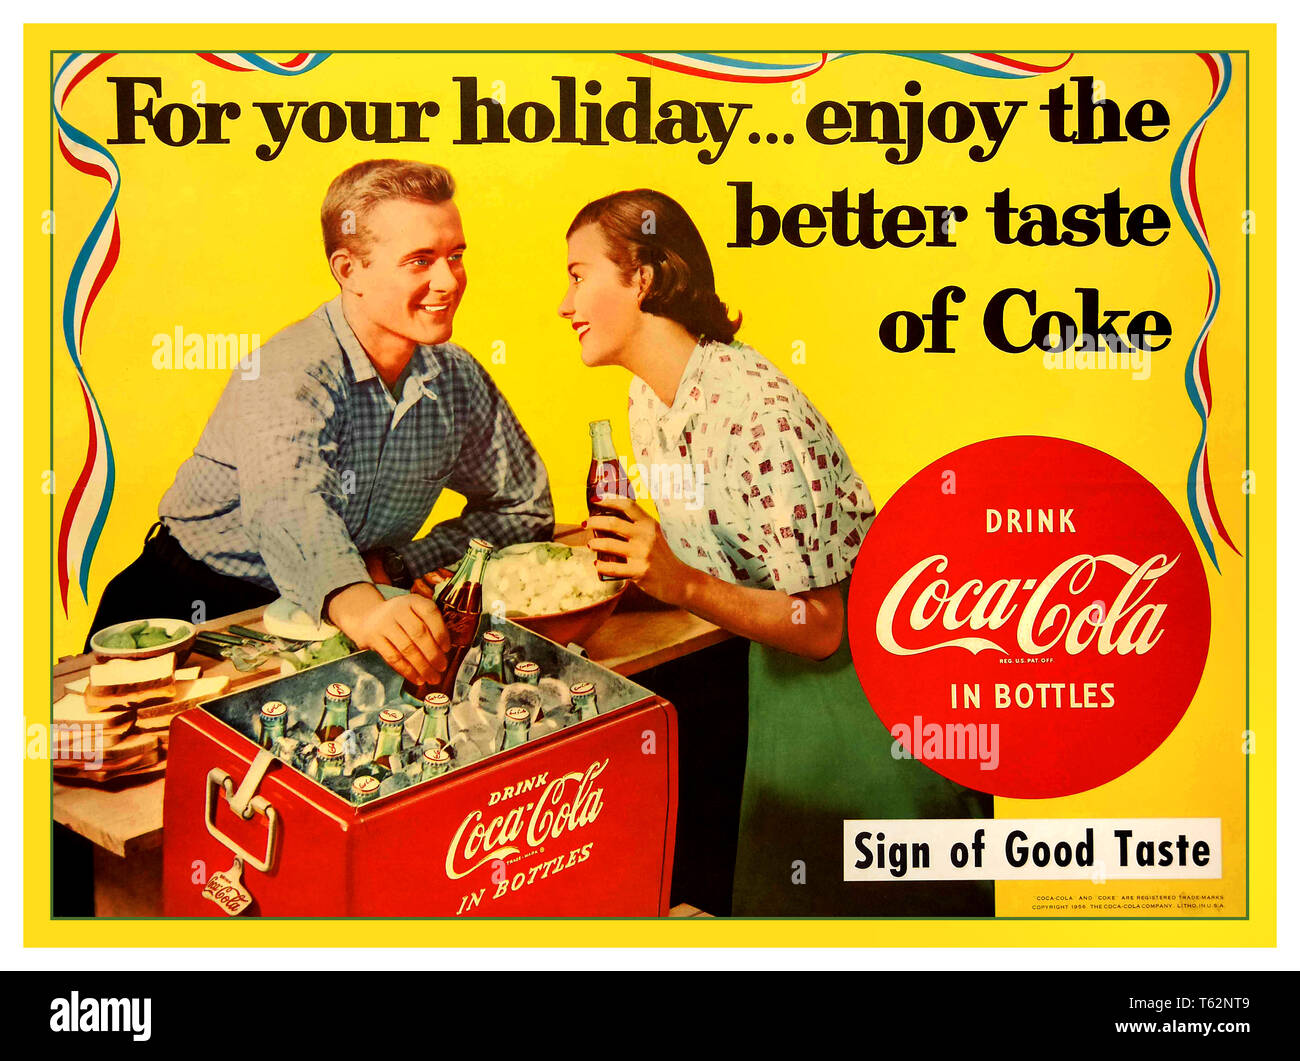 Vintage 1950 Coca Cola poster publicité ' pour vos vacances ... profitez du meilleur goût de Coke' Banque D'Images